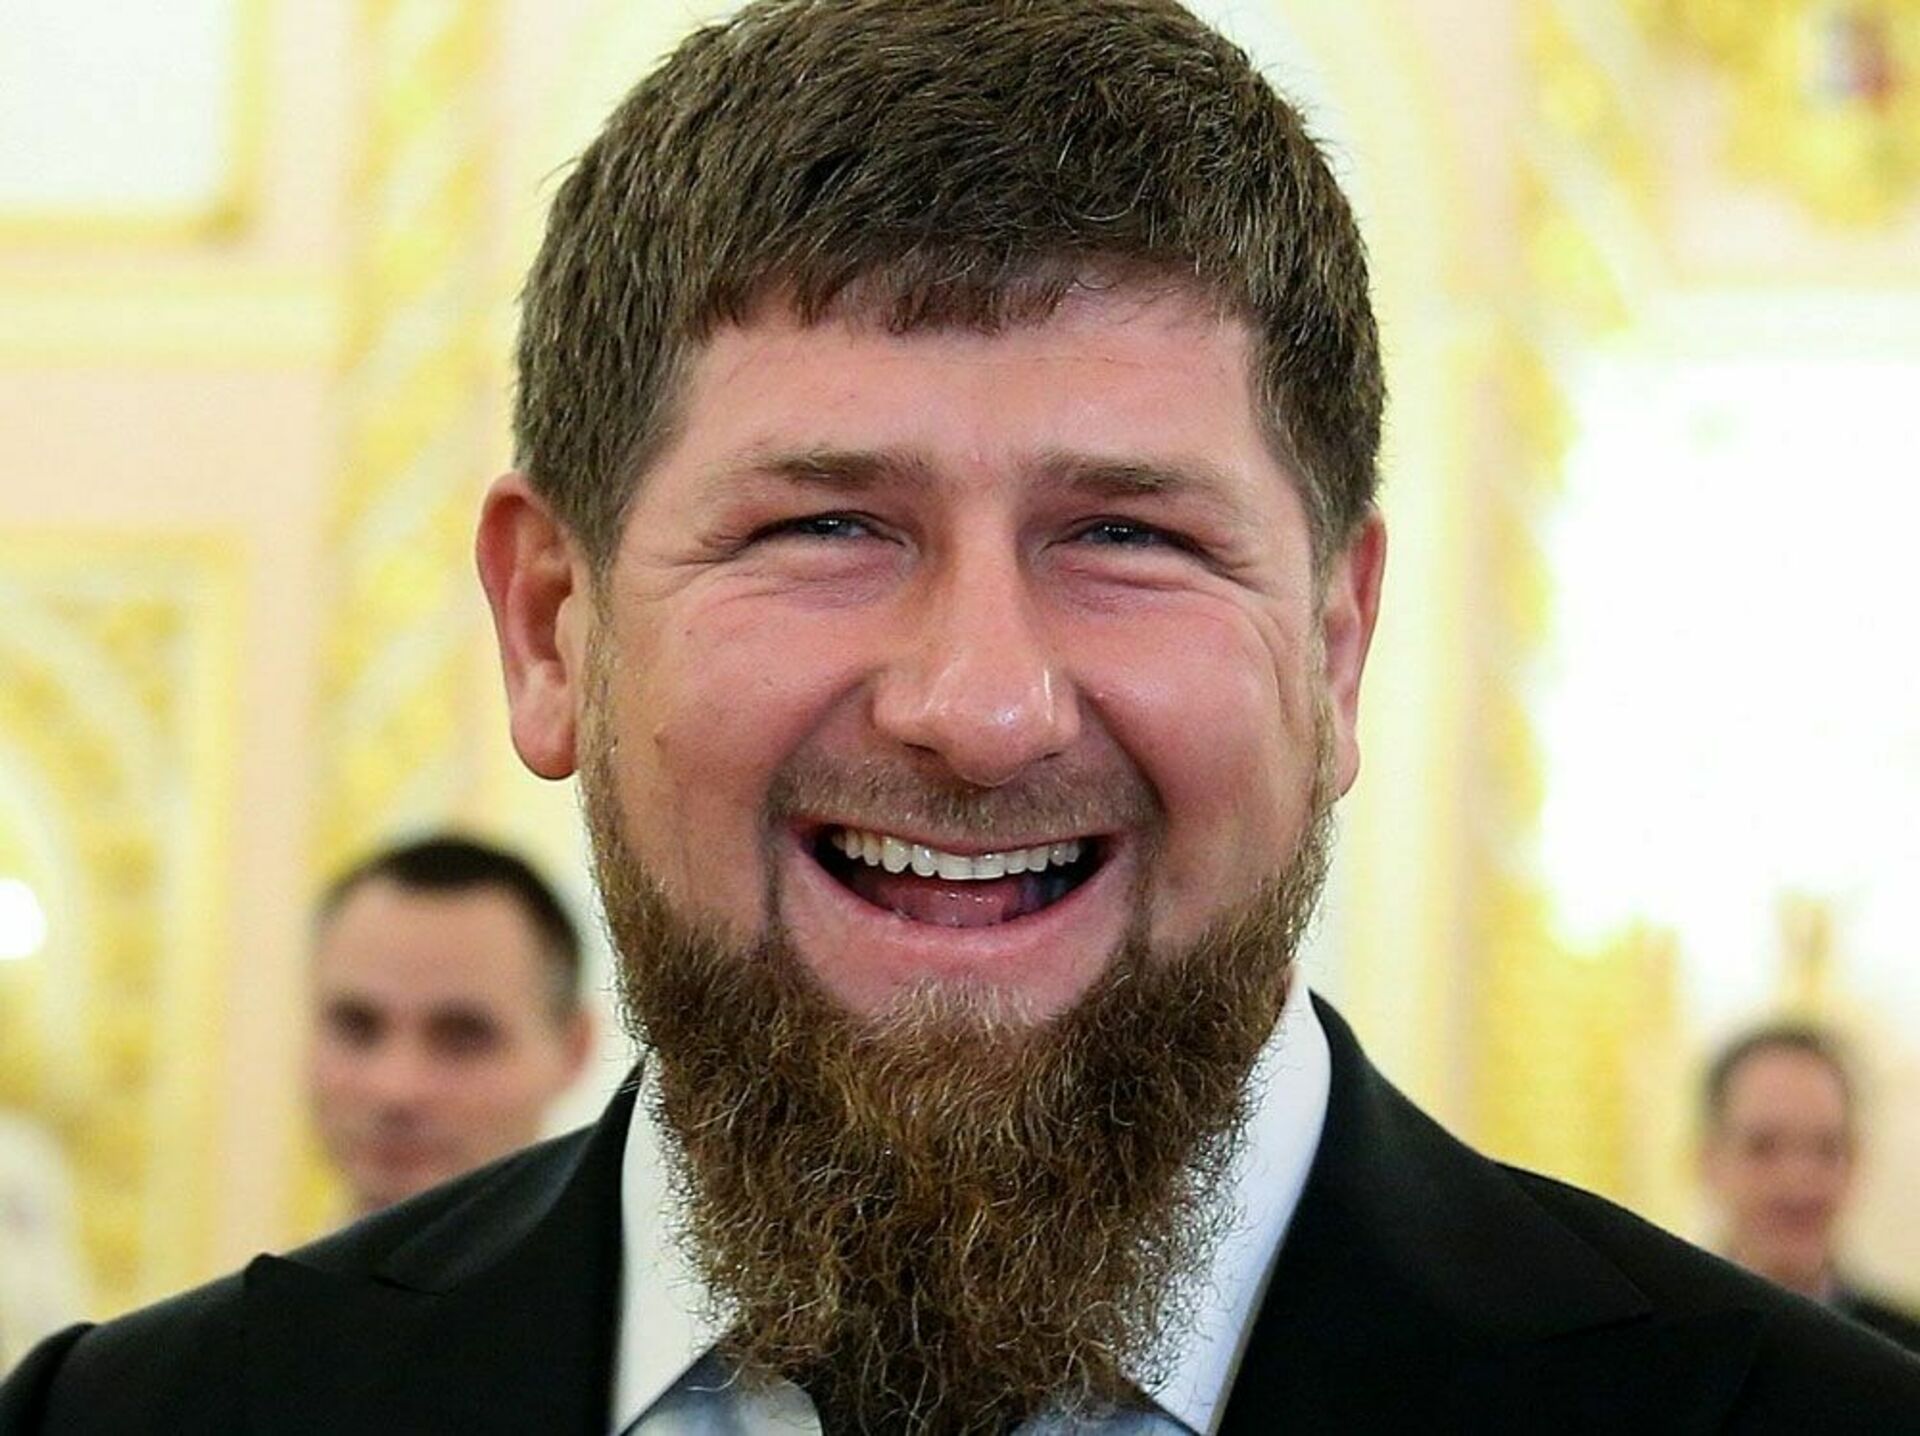 Как будет на чеченском добрый